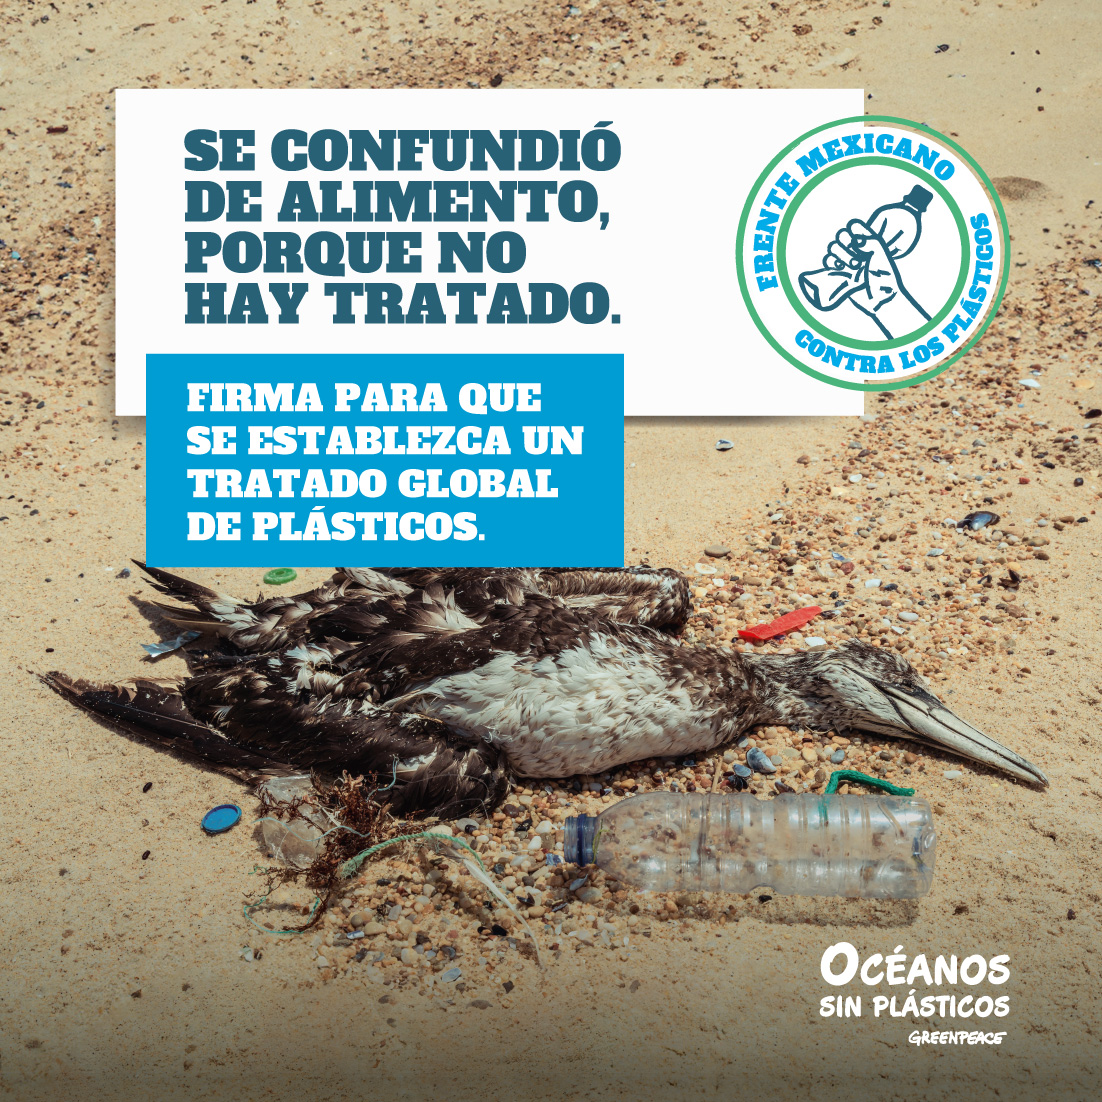 🦤 ¡Miles de especies están en peligro por los plásticos de un solo uso! 🚨 Muchos quedan atrapados o ingieren plásticos,😥 ¡No podemos permitirlo! ¡Necesitamos un Tratado Global de Plásticos ambicioso para protegerlos! 🌊💪 ¡Firma la petición! ✍️ act.gp/3Qp7hcy